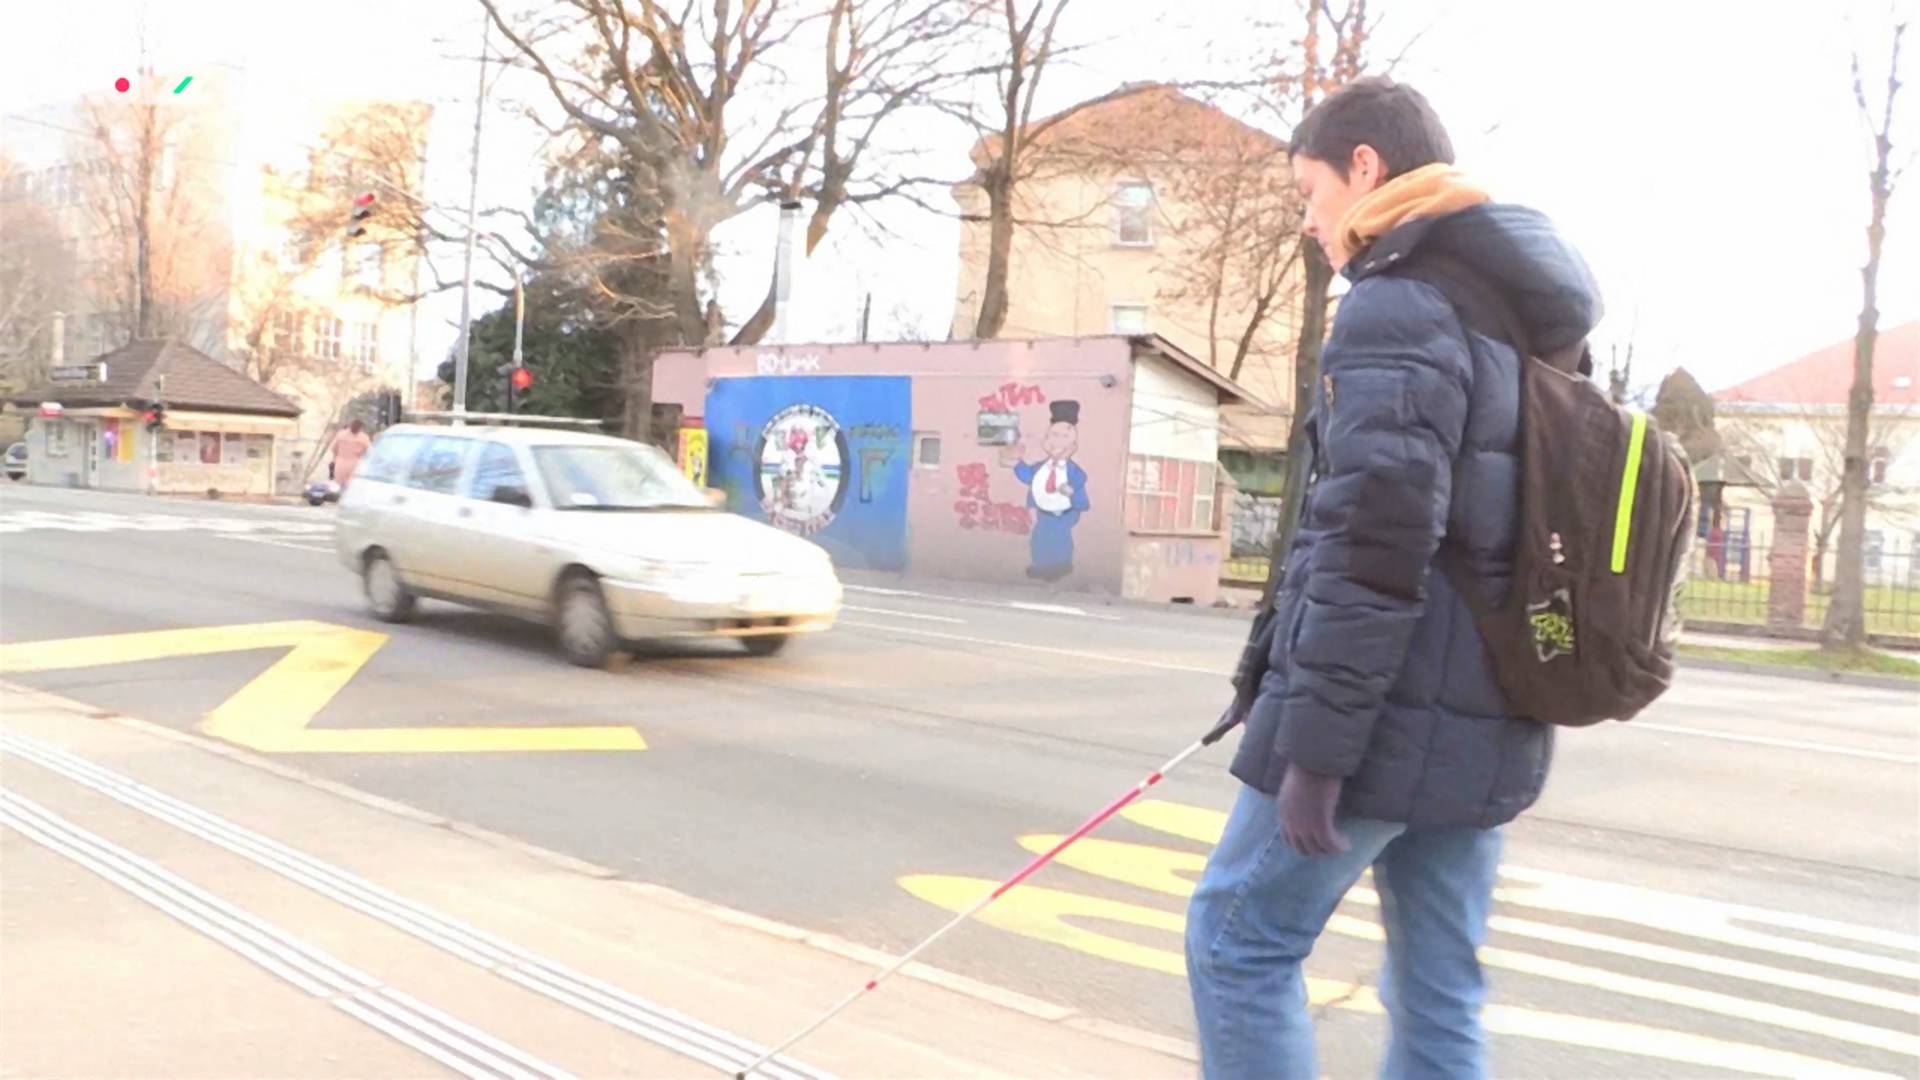 Koracima slepog dečaka u Beogradu